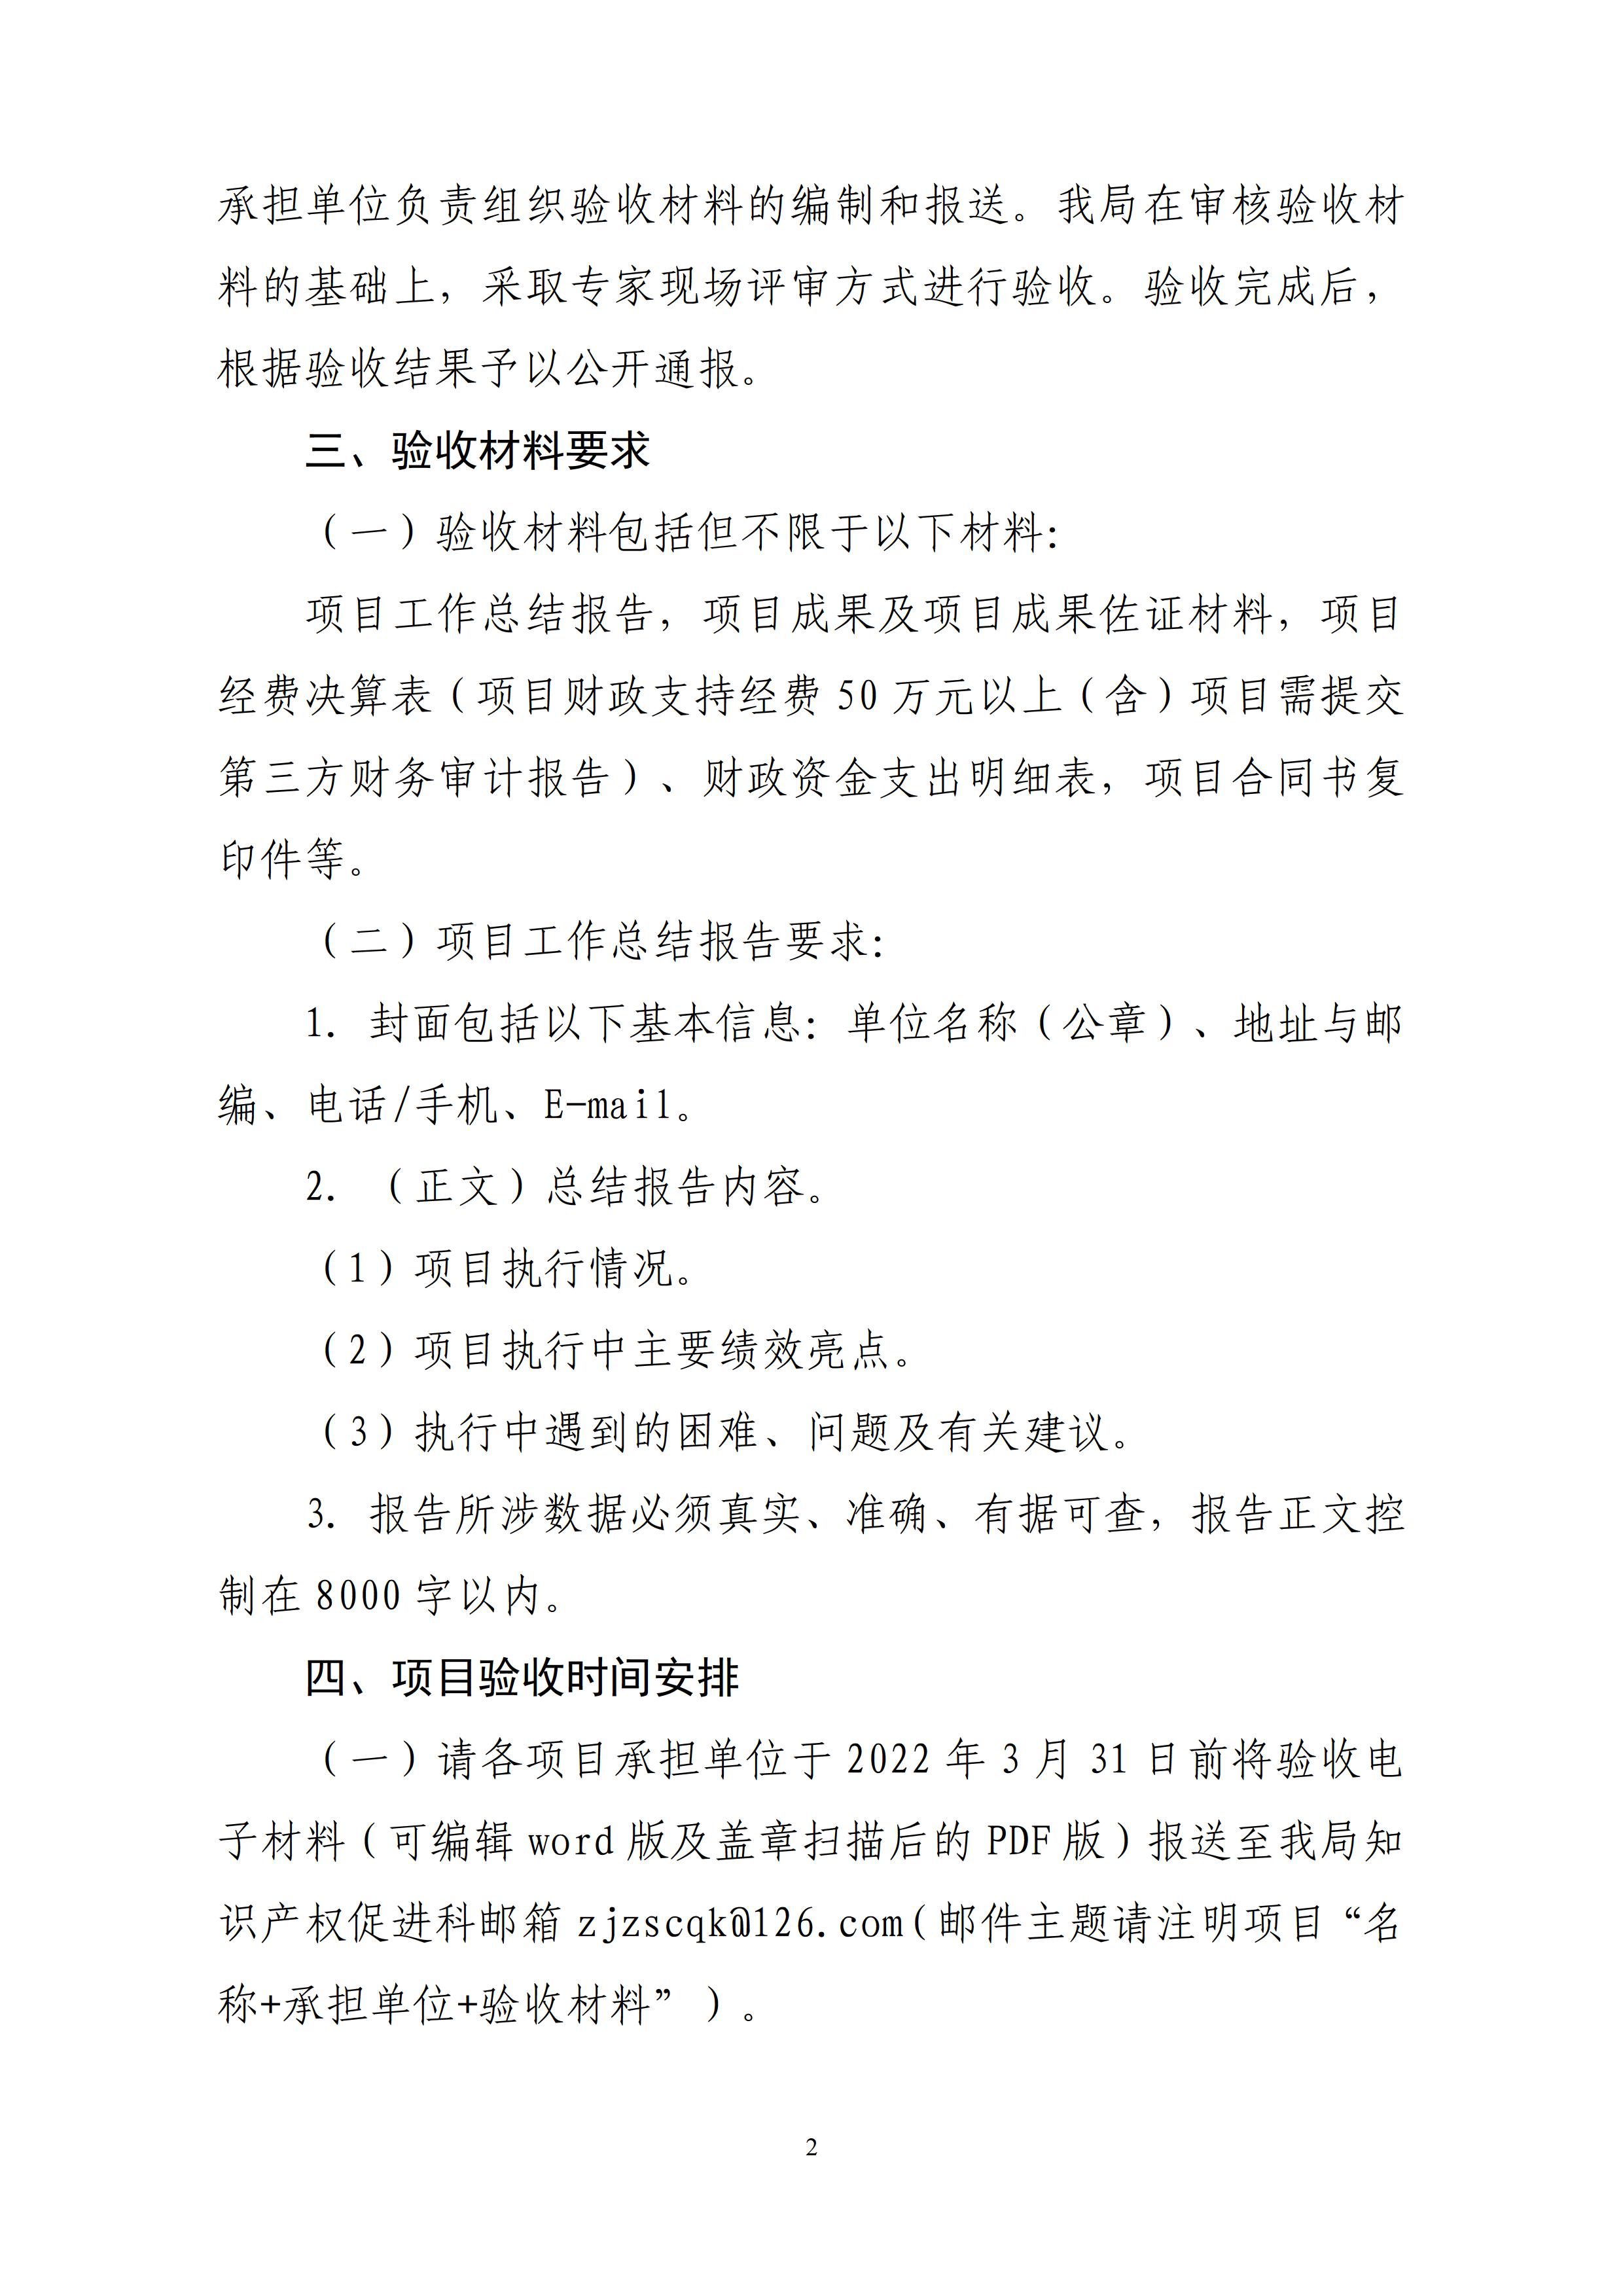 湛江市市场监督管理局关于开展2021年知识产权促进类项目验收工作的通知 - 0002.jpg